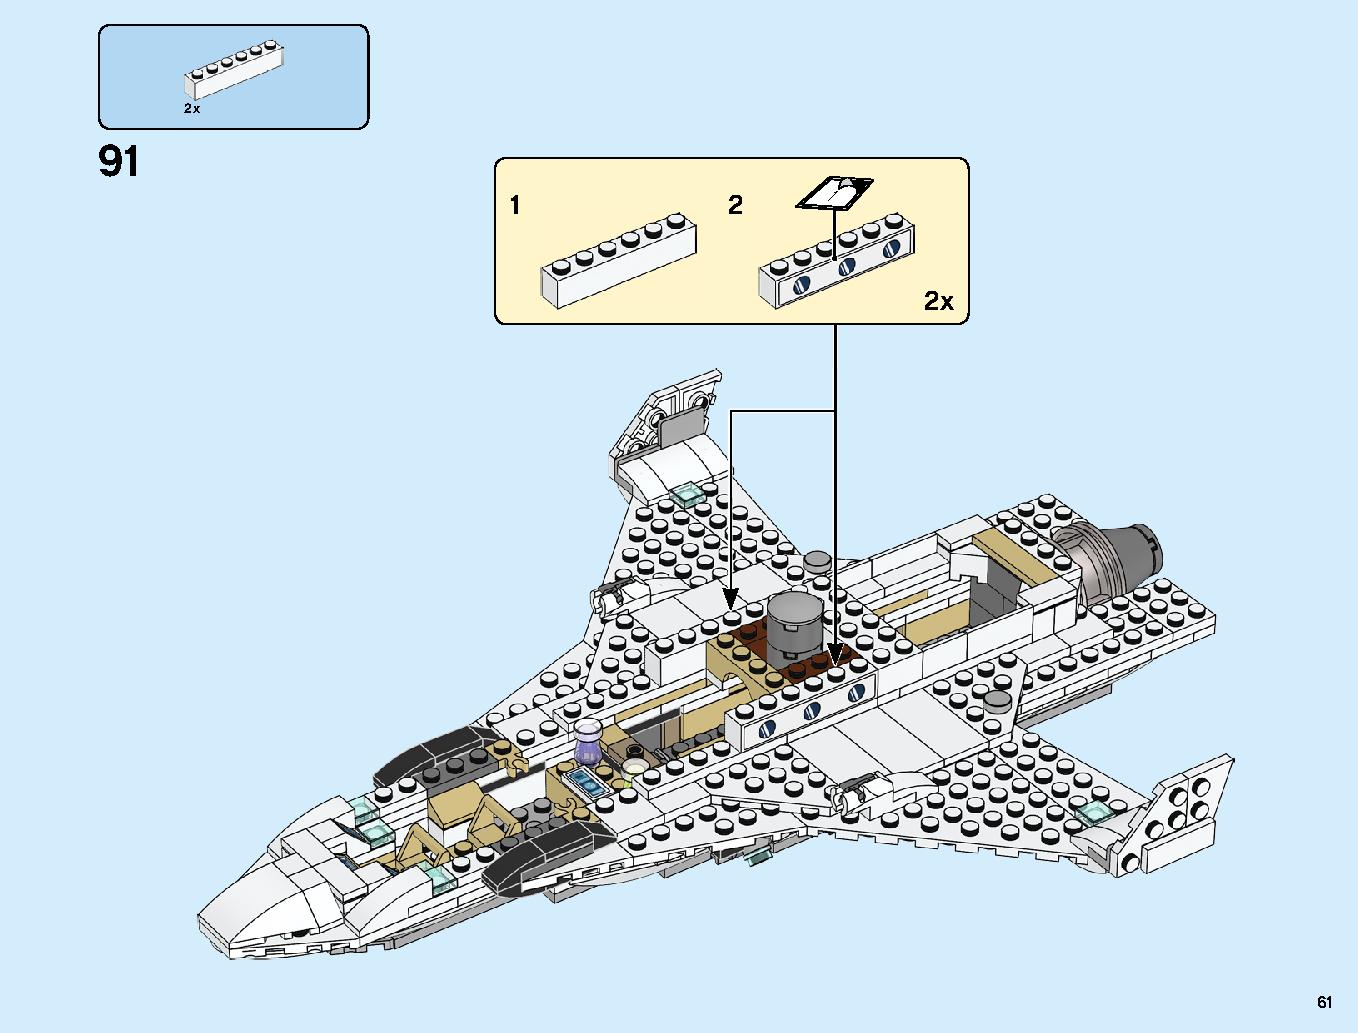 スタークジェットとドローン攻撃 76130 レゴの商品情報 レゴの説明書・組立方法 61 page